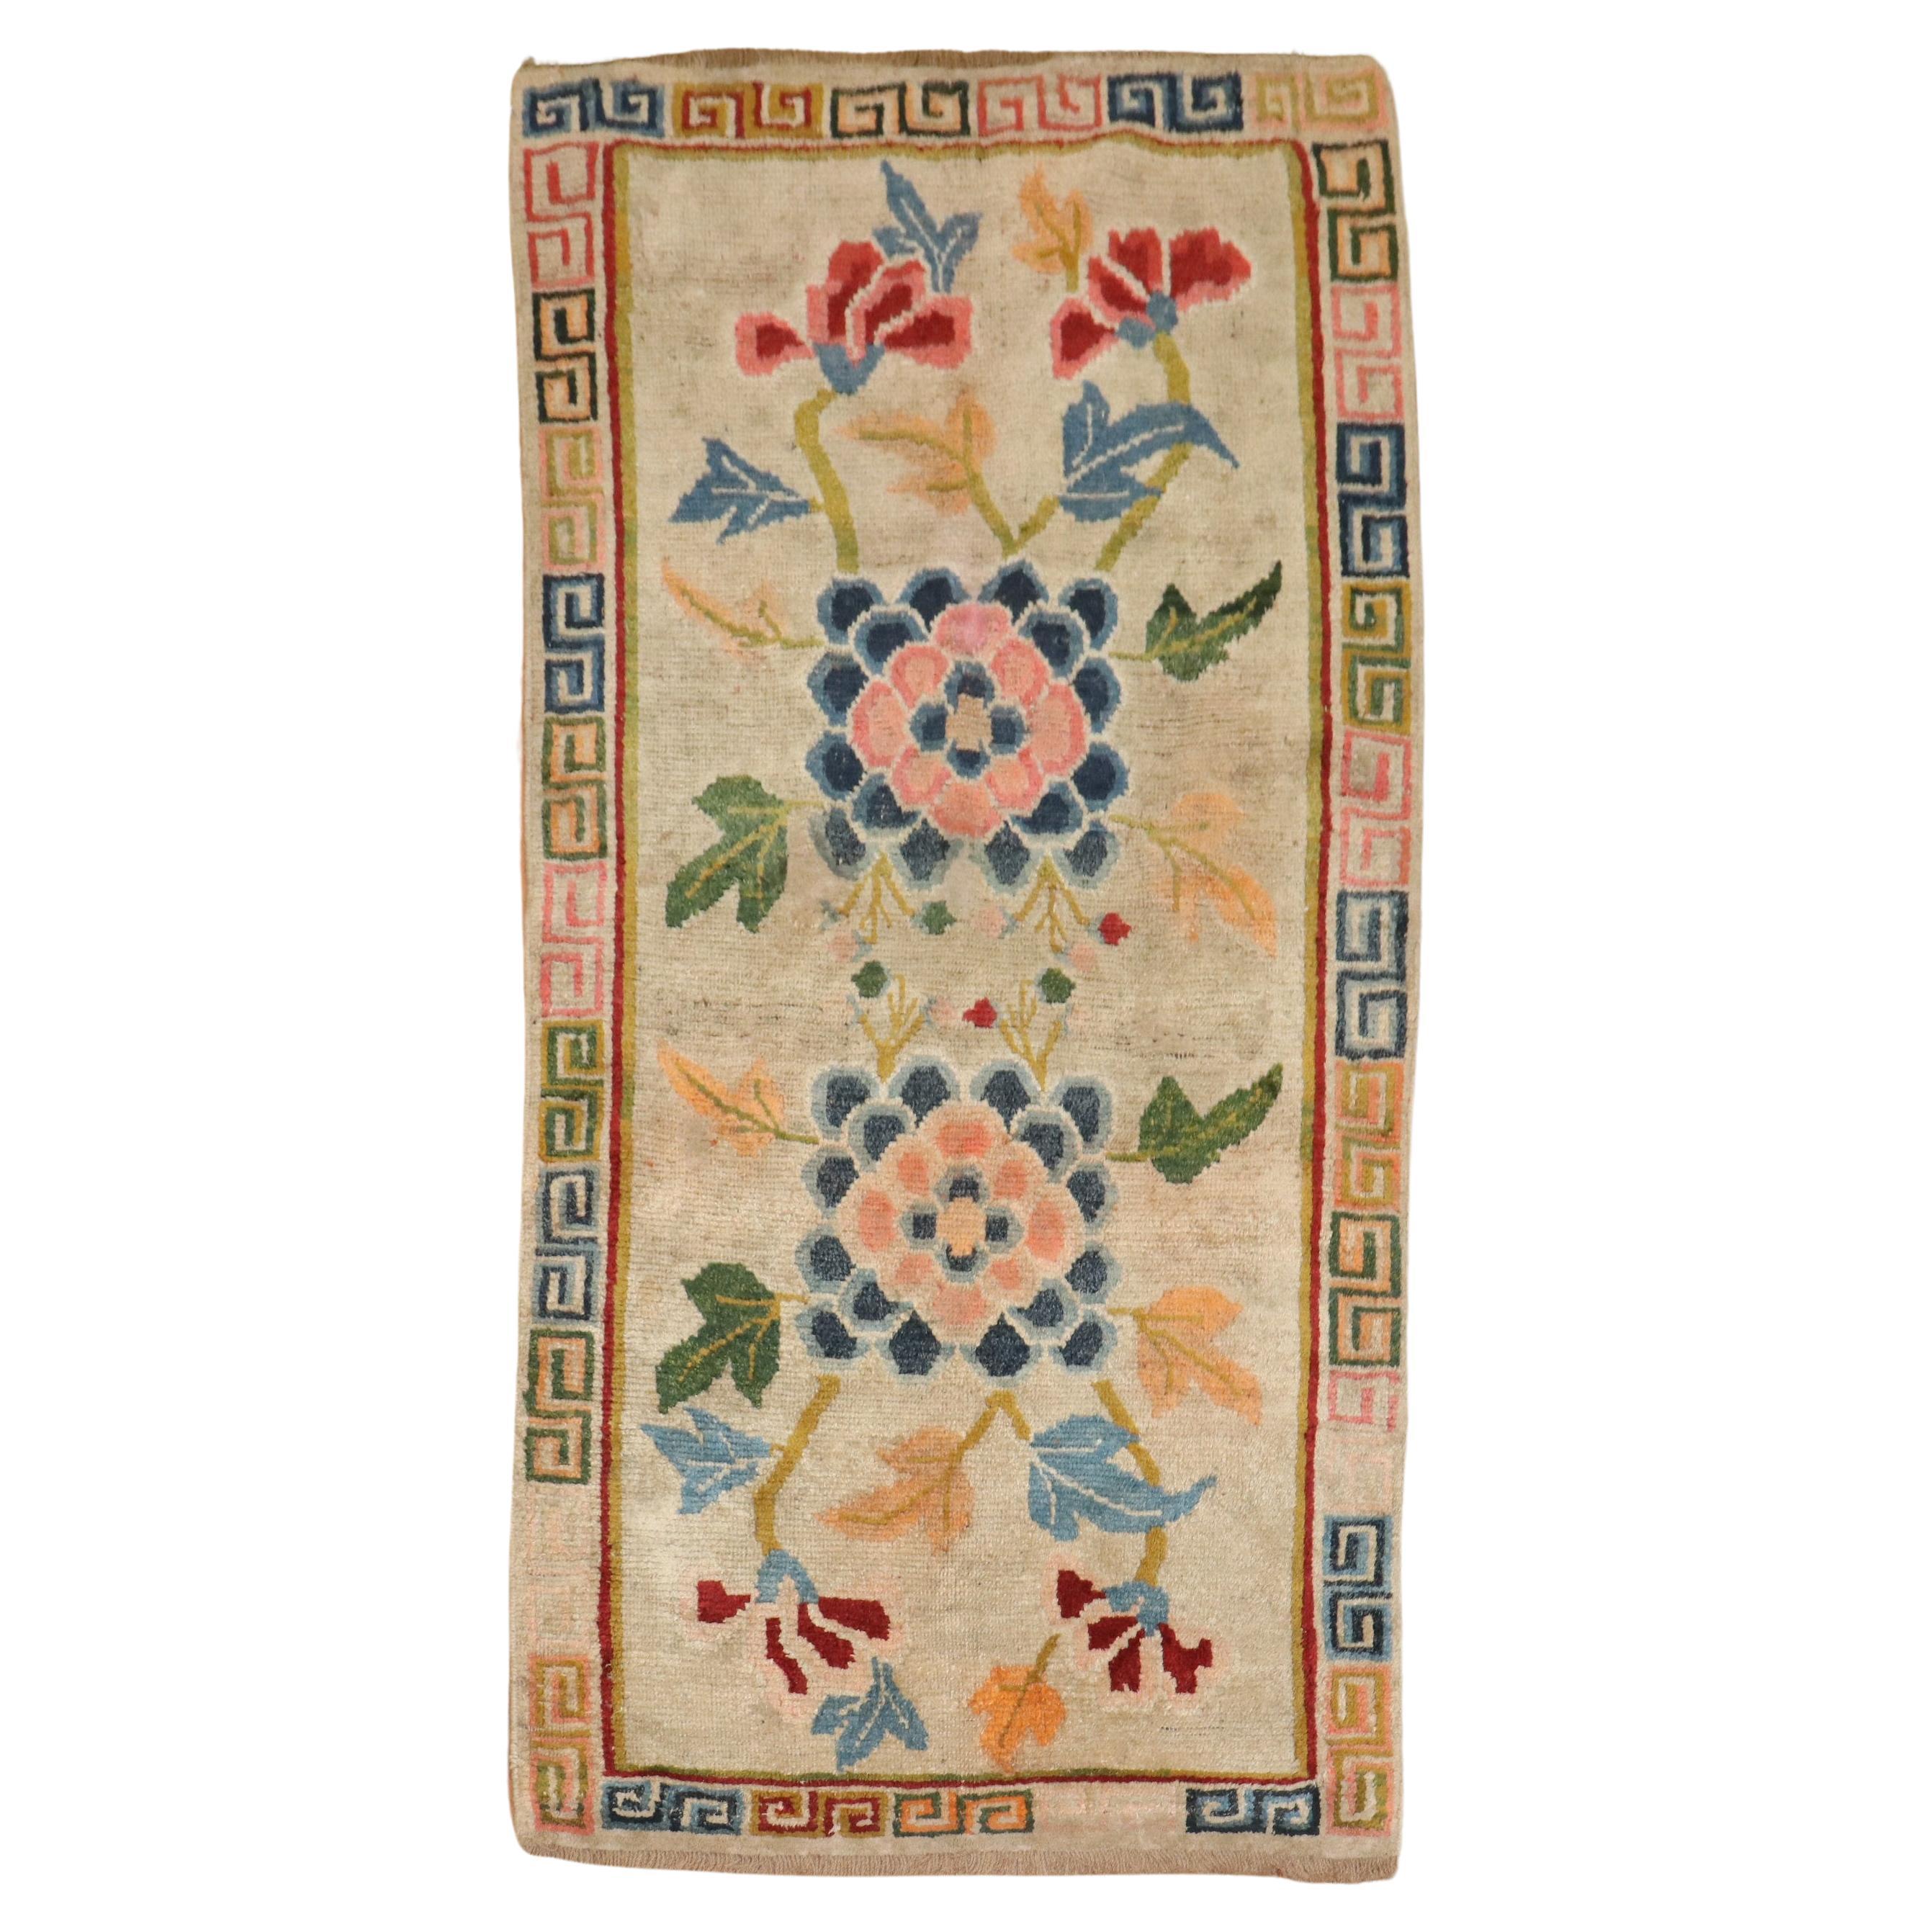 Zabihi Collection Floral Scatter Vintage Tibetan Rug